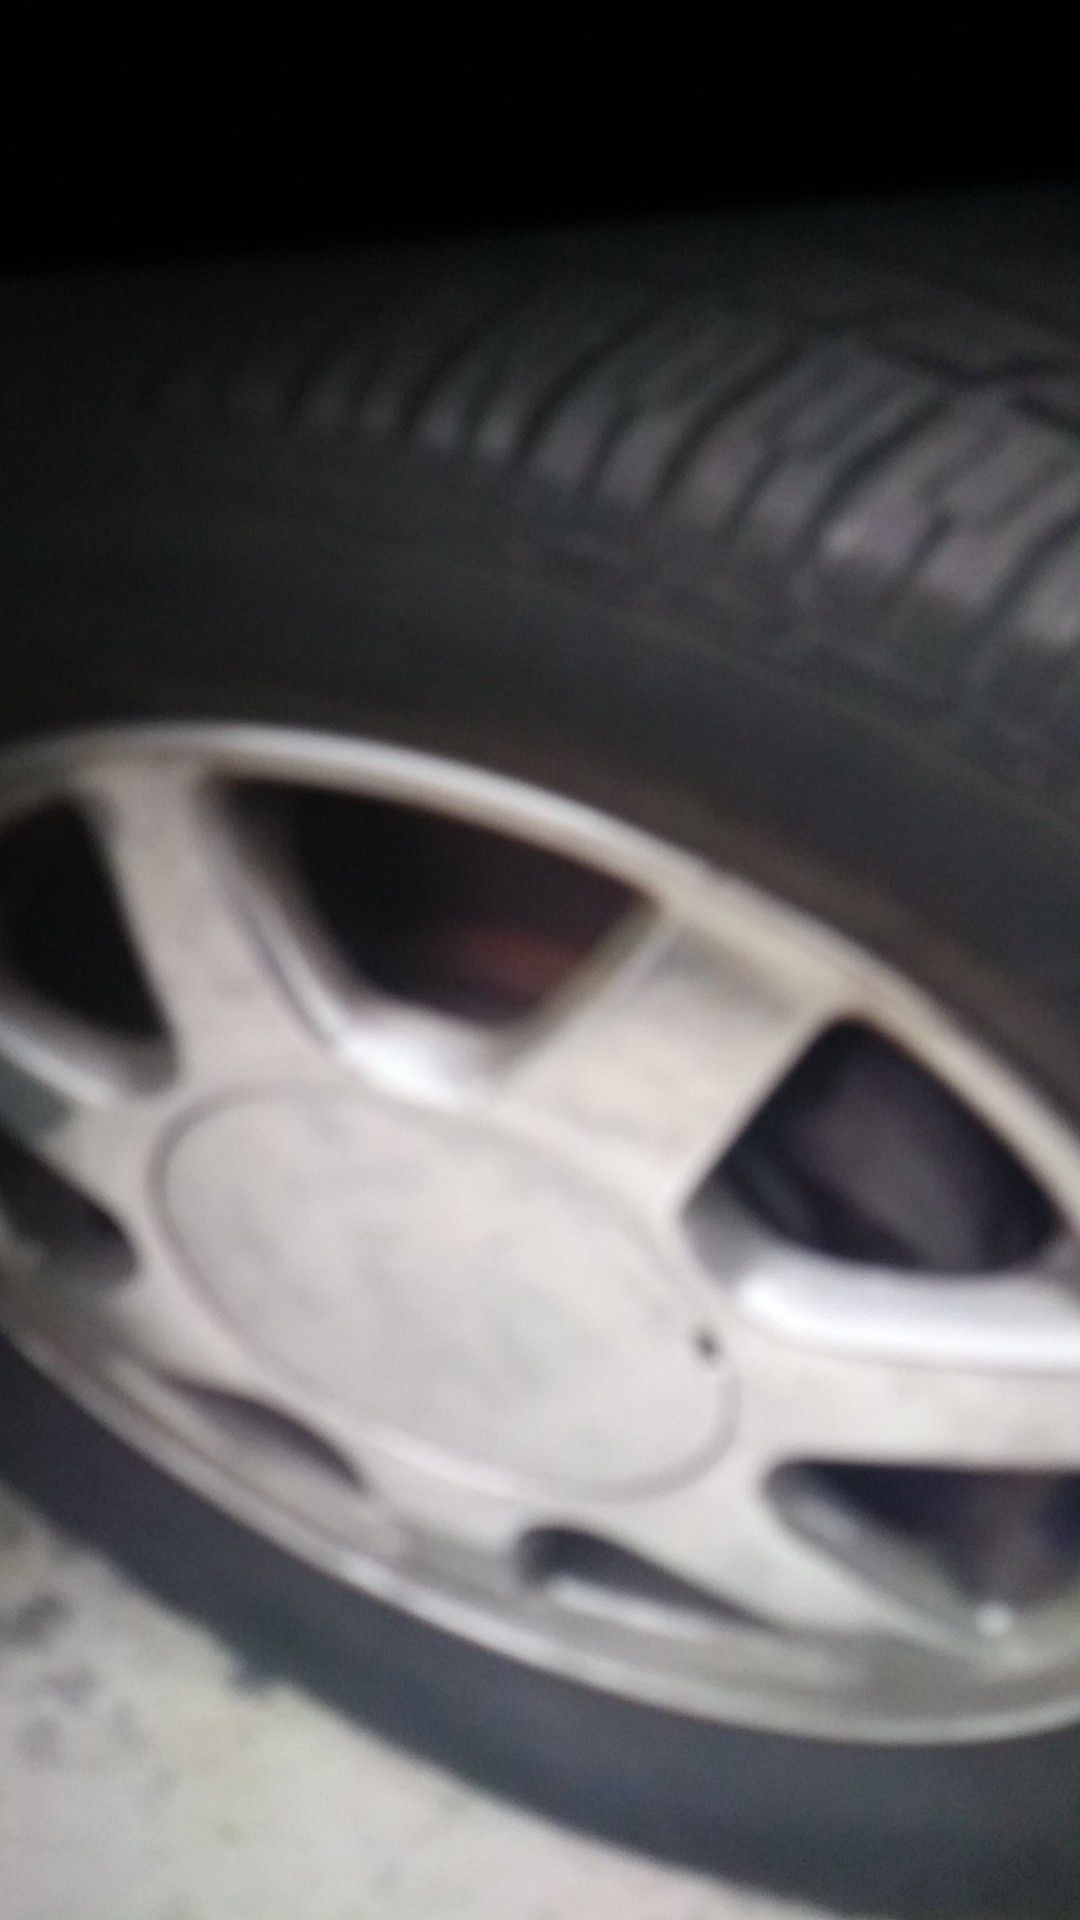 Kenetica tires 195/65R15